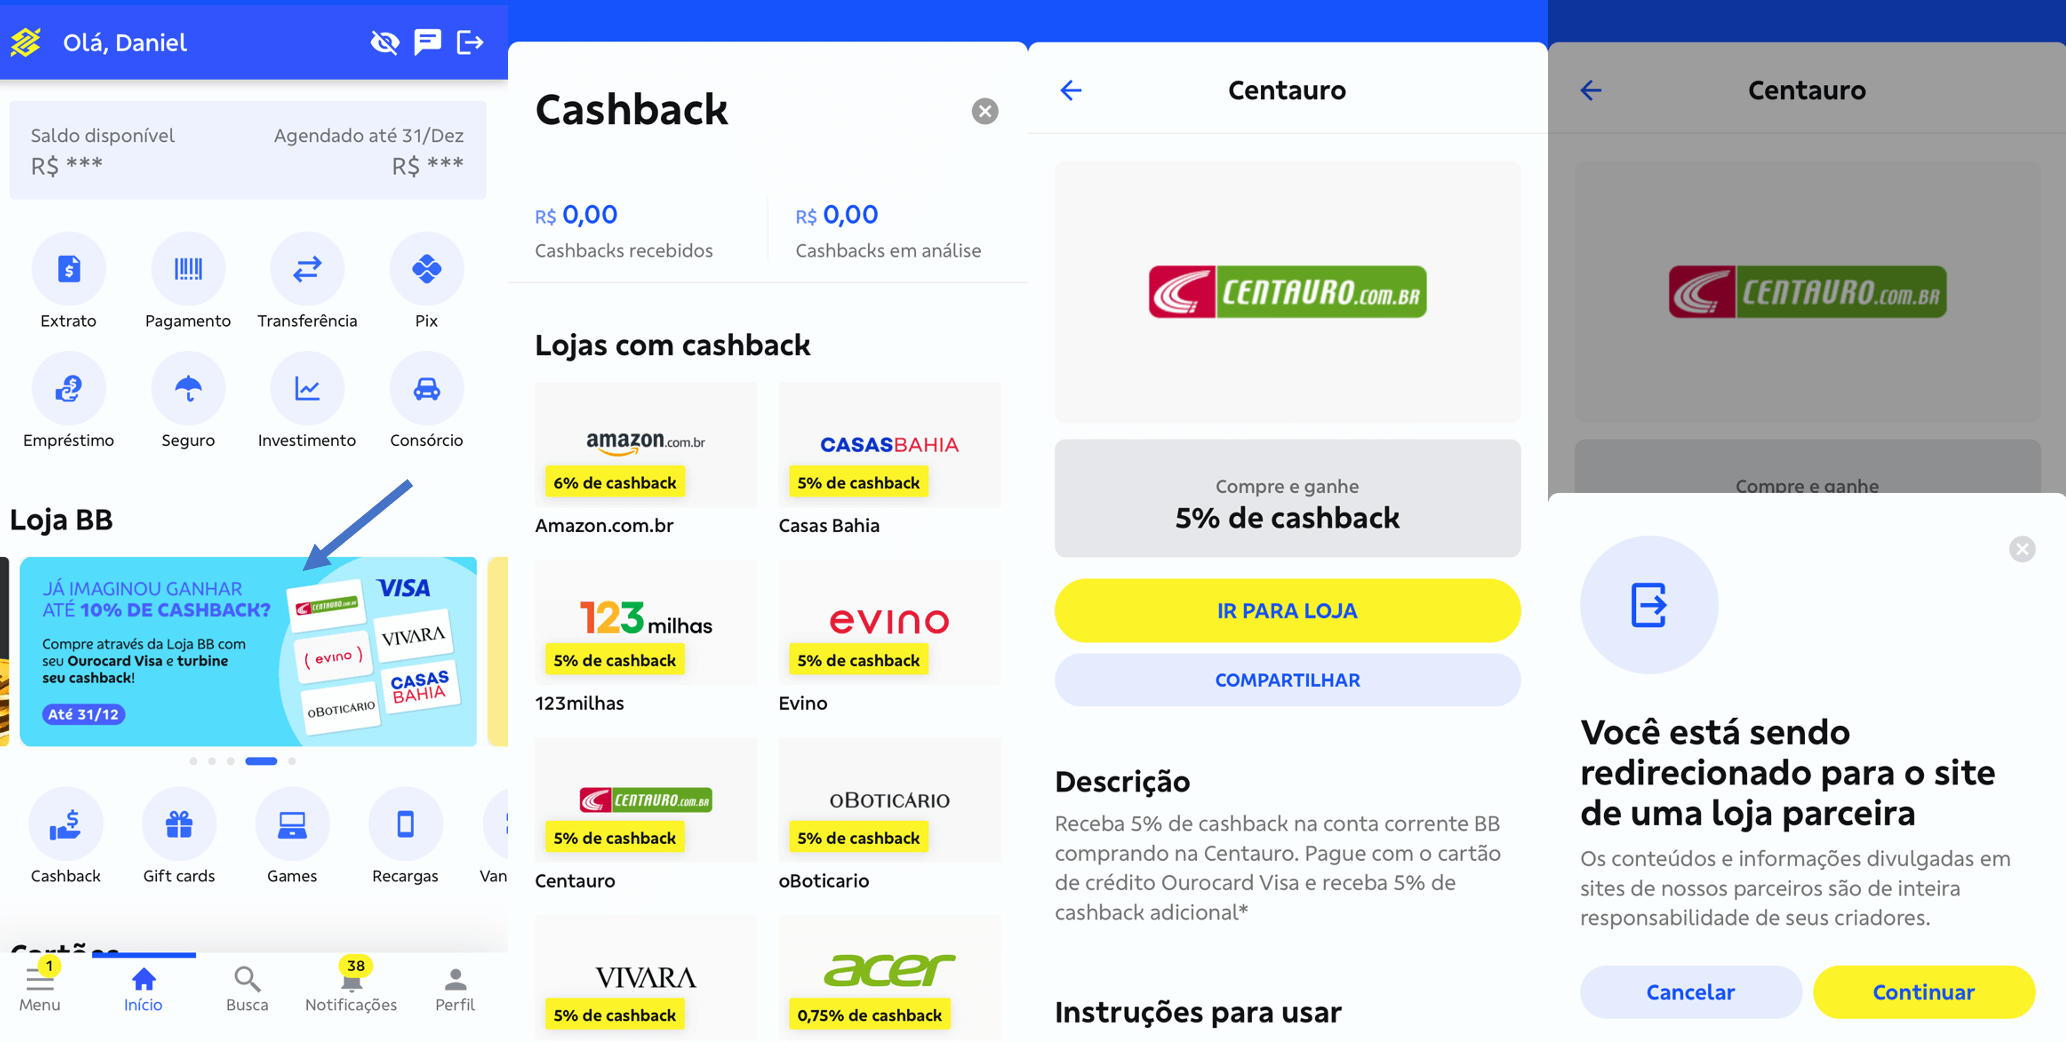 banco-do-brasil-oferece-at-10-de-cashback-em-compras-online